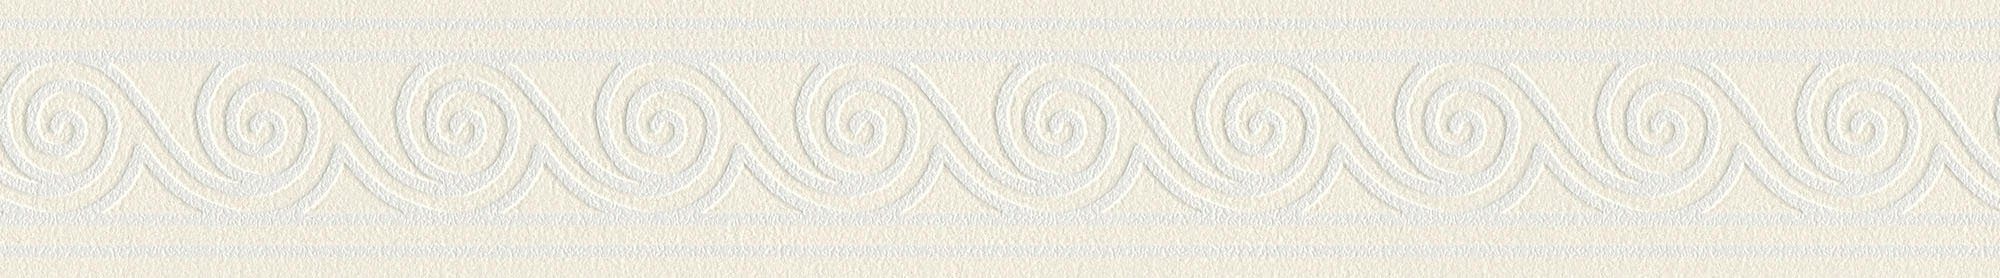 11, weiß/weiß Only glänzend, A.S. Création Tapete Bordüre Streifen, Borders abstrakt, strukturiert, Bordüre Wellen